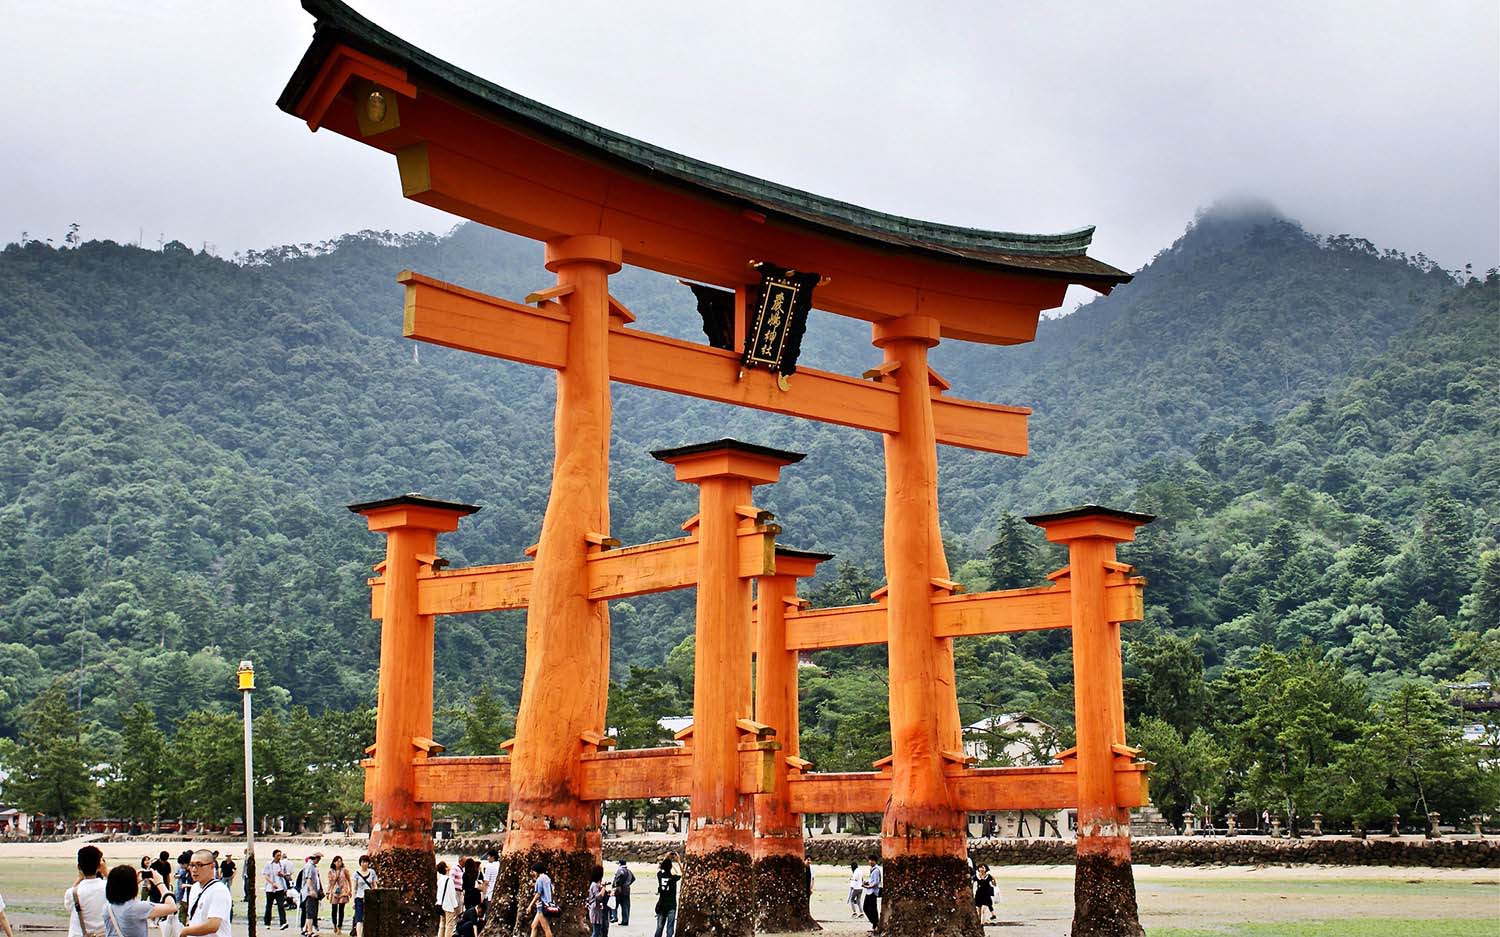 The torii gate at Miyajima